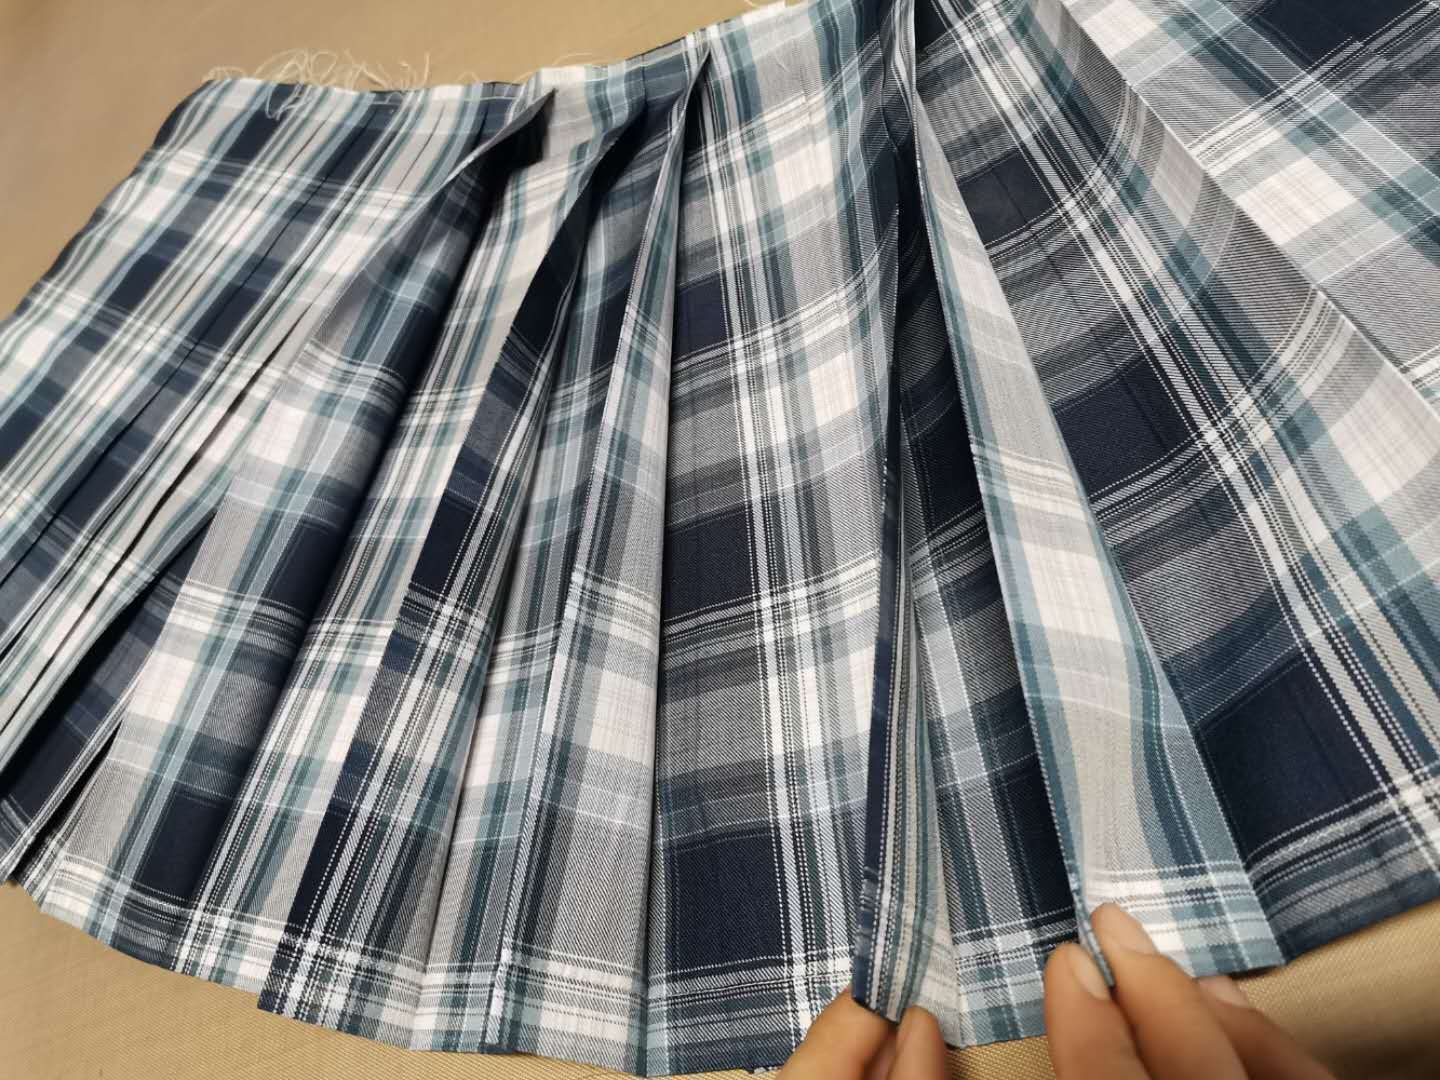 Pleated skirt pleating machine 100*120  double heat press machine rosin  